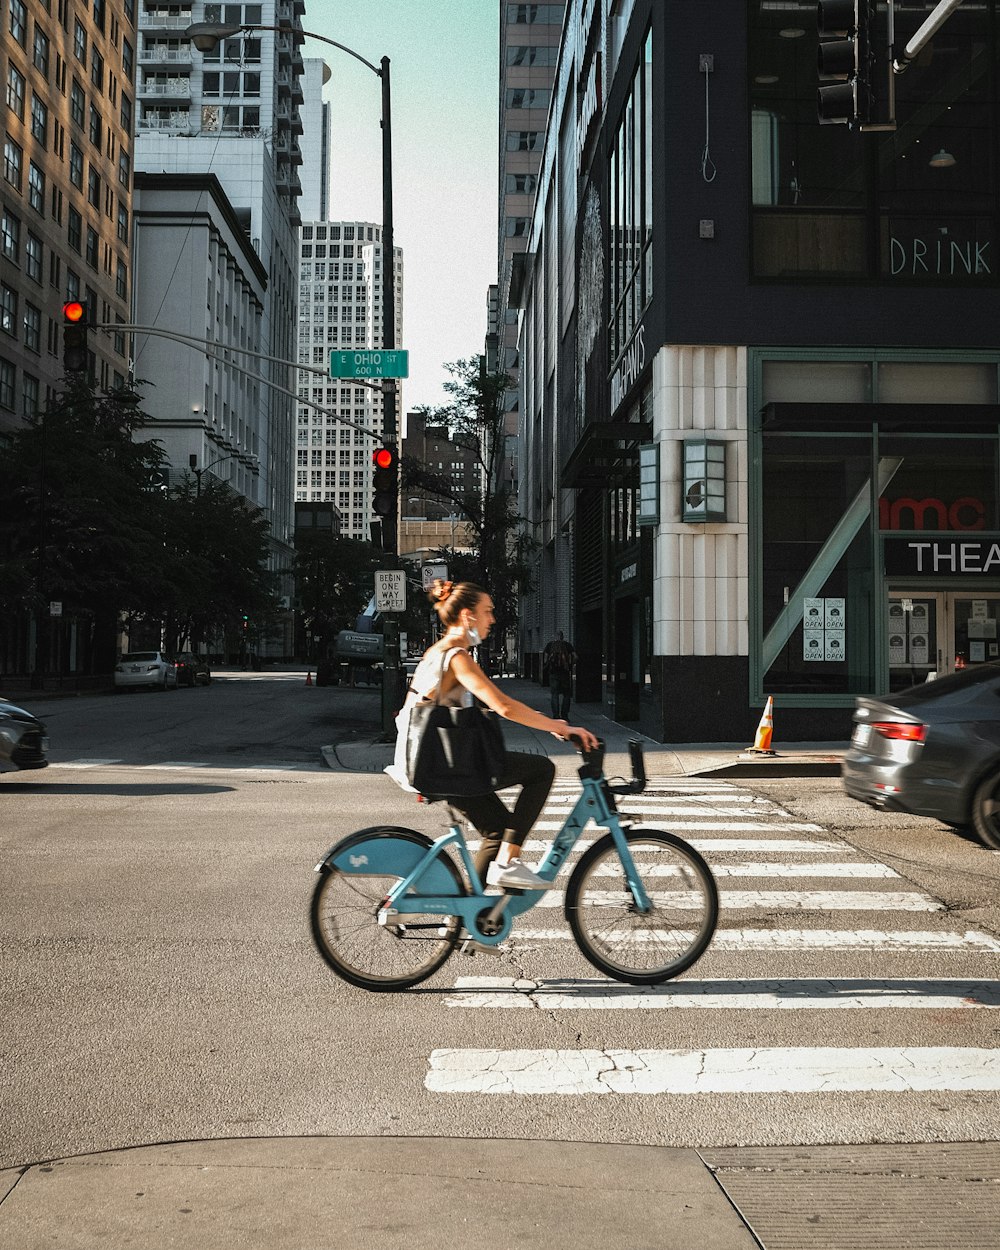 Mann im schwarzen Hemd fährt tagsüber Fahrrad auf der Fußgängerzone